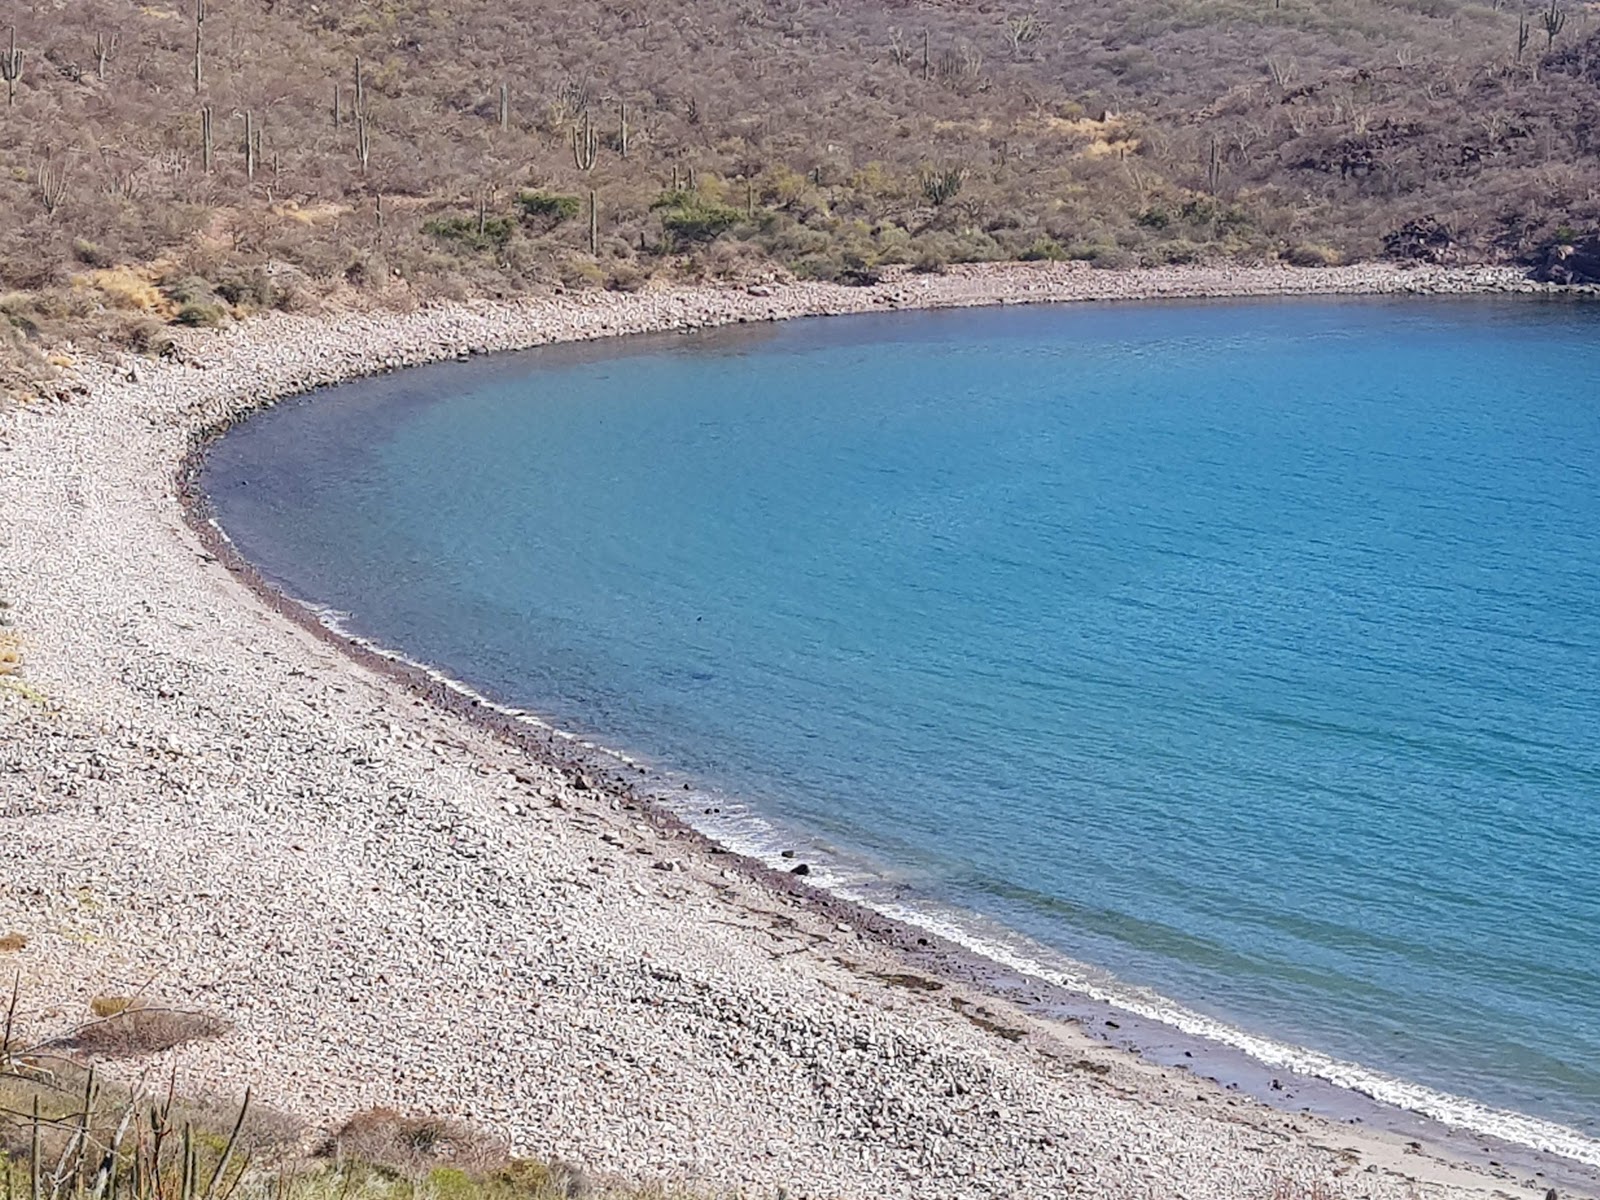 Zdjęcie El carricito beach z powierzchnią szary kamyk